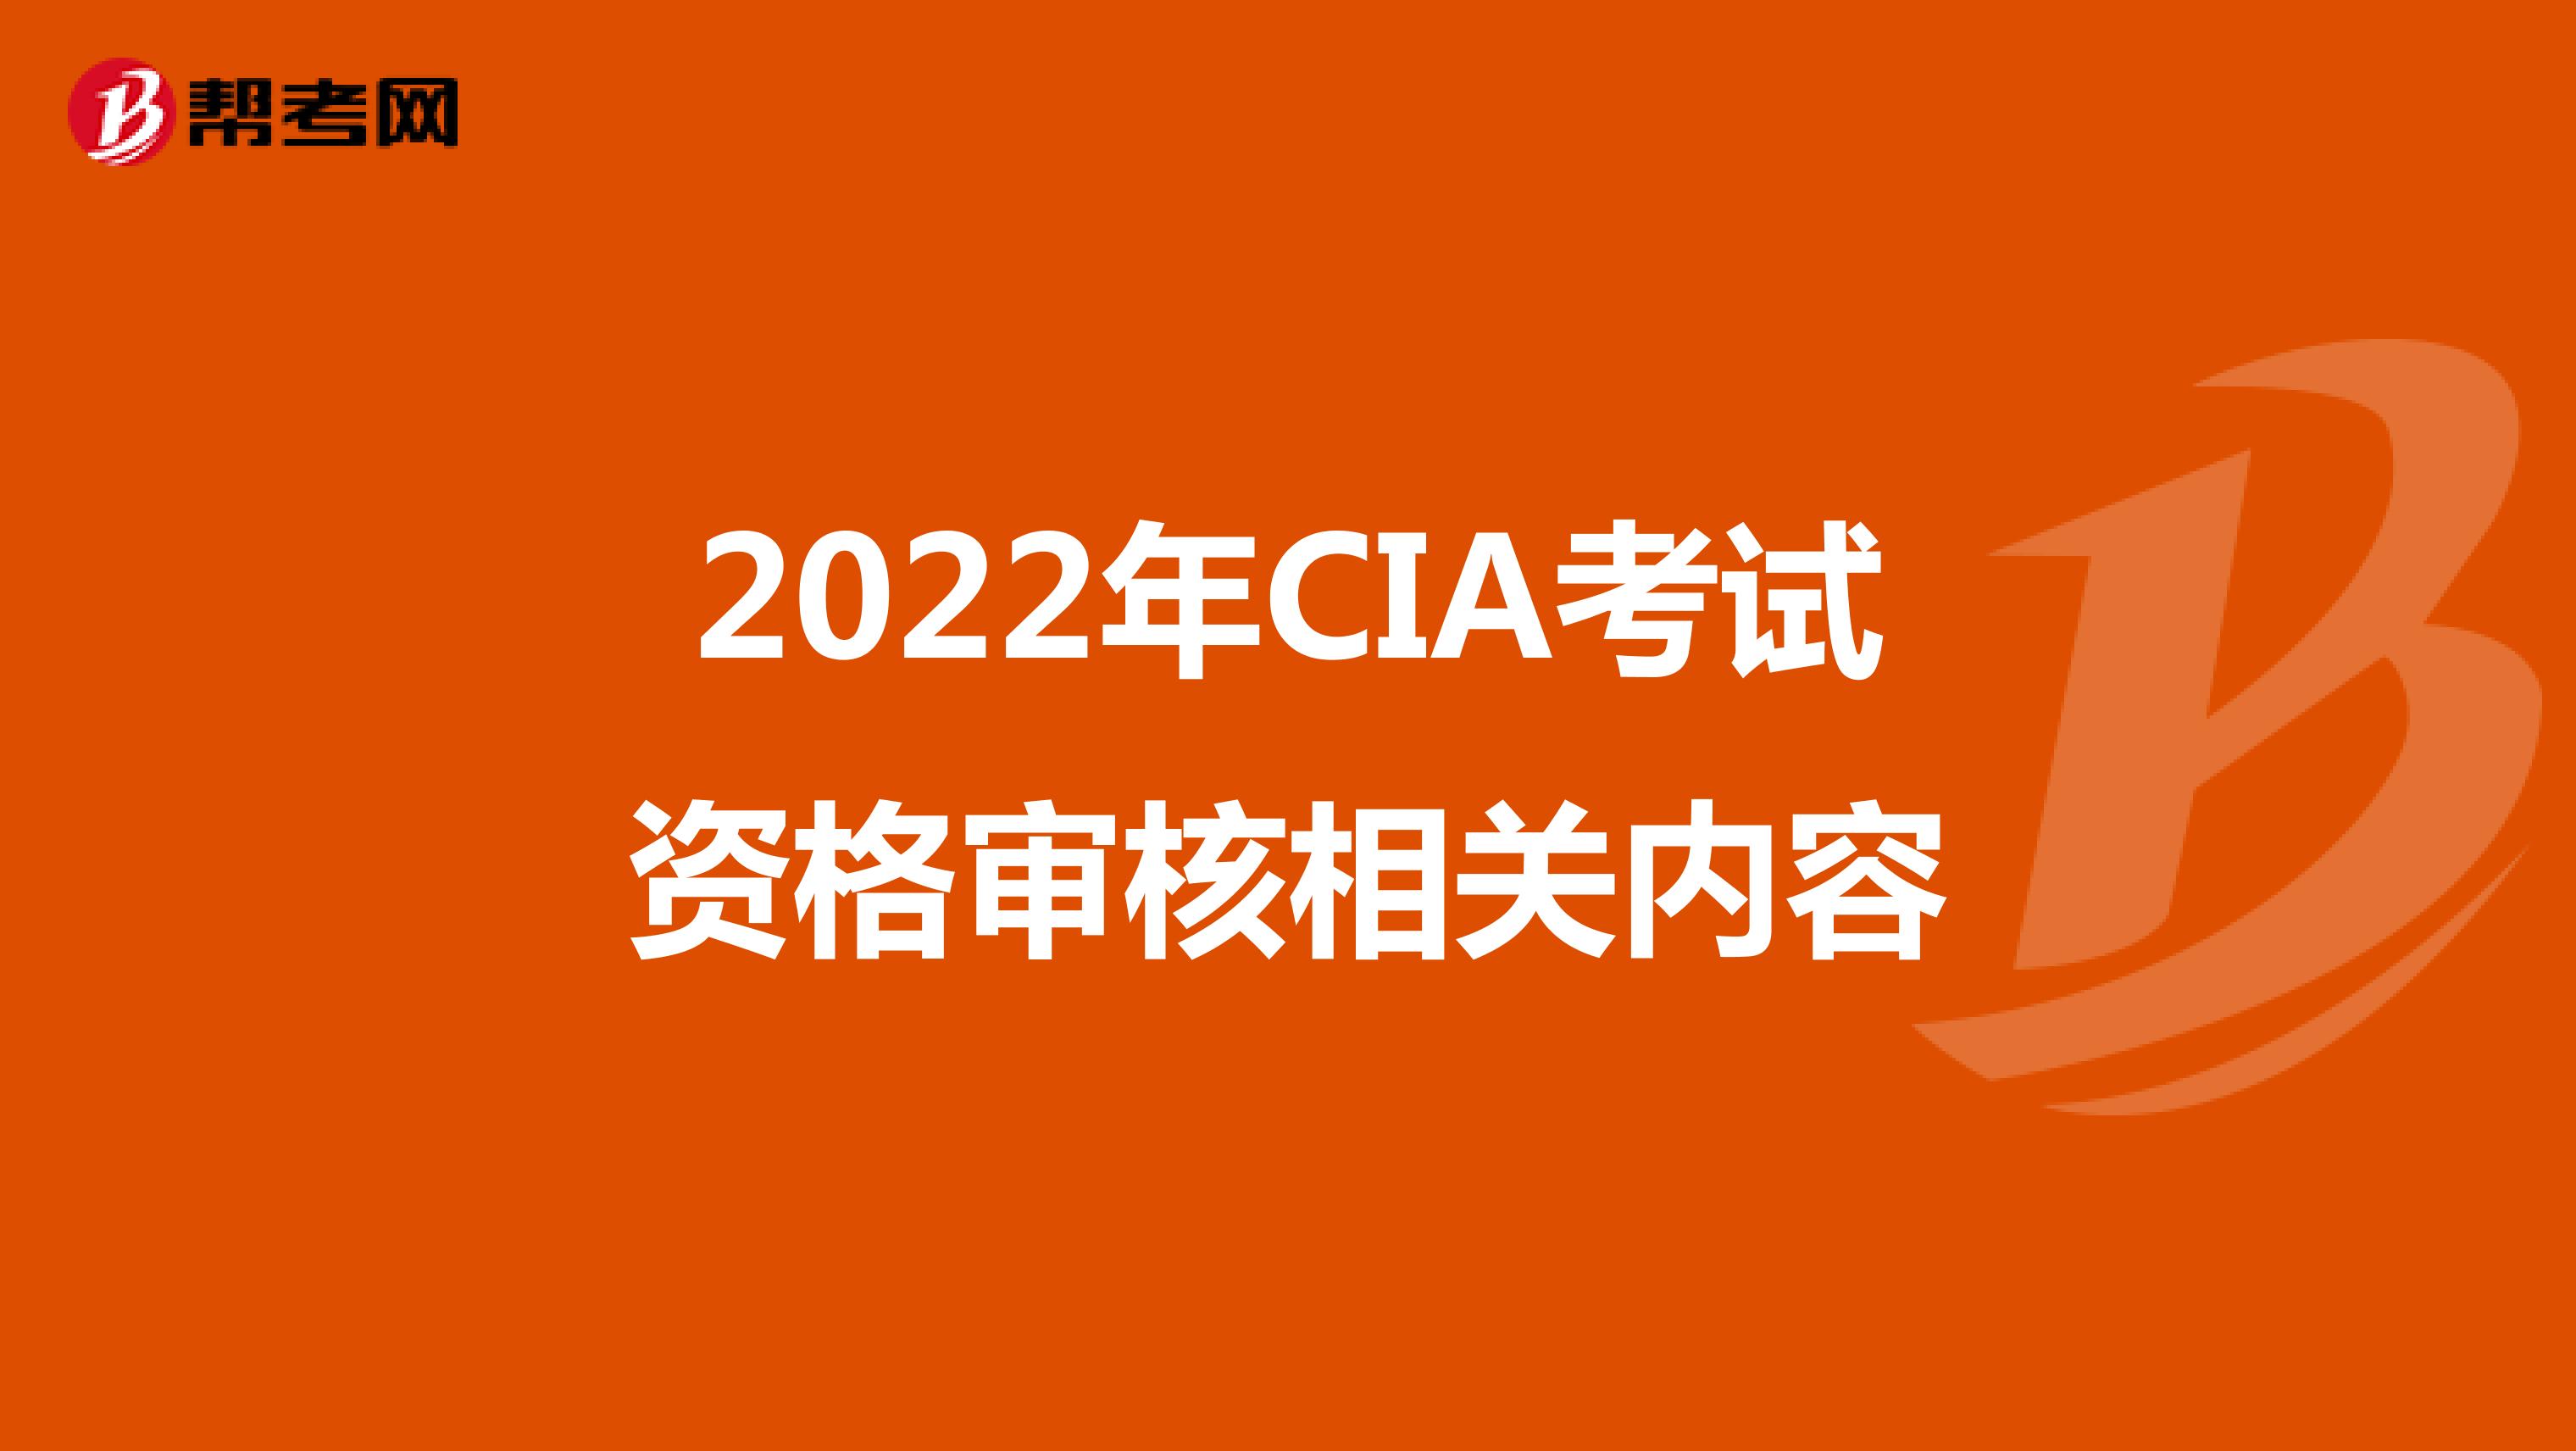 2022年CIA考试资格审核相关内容